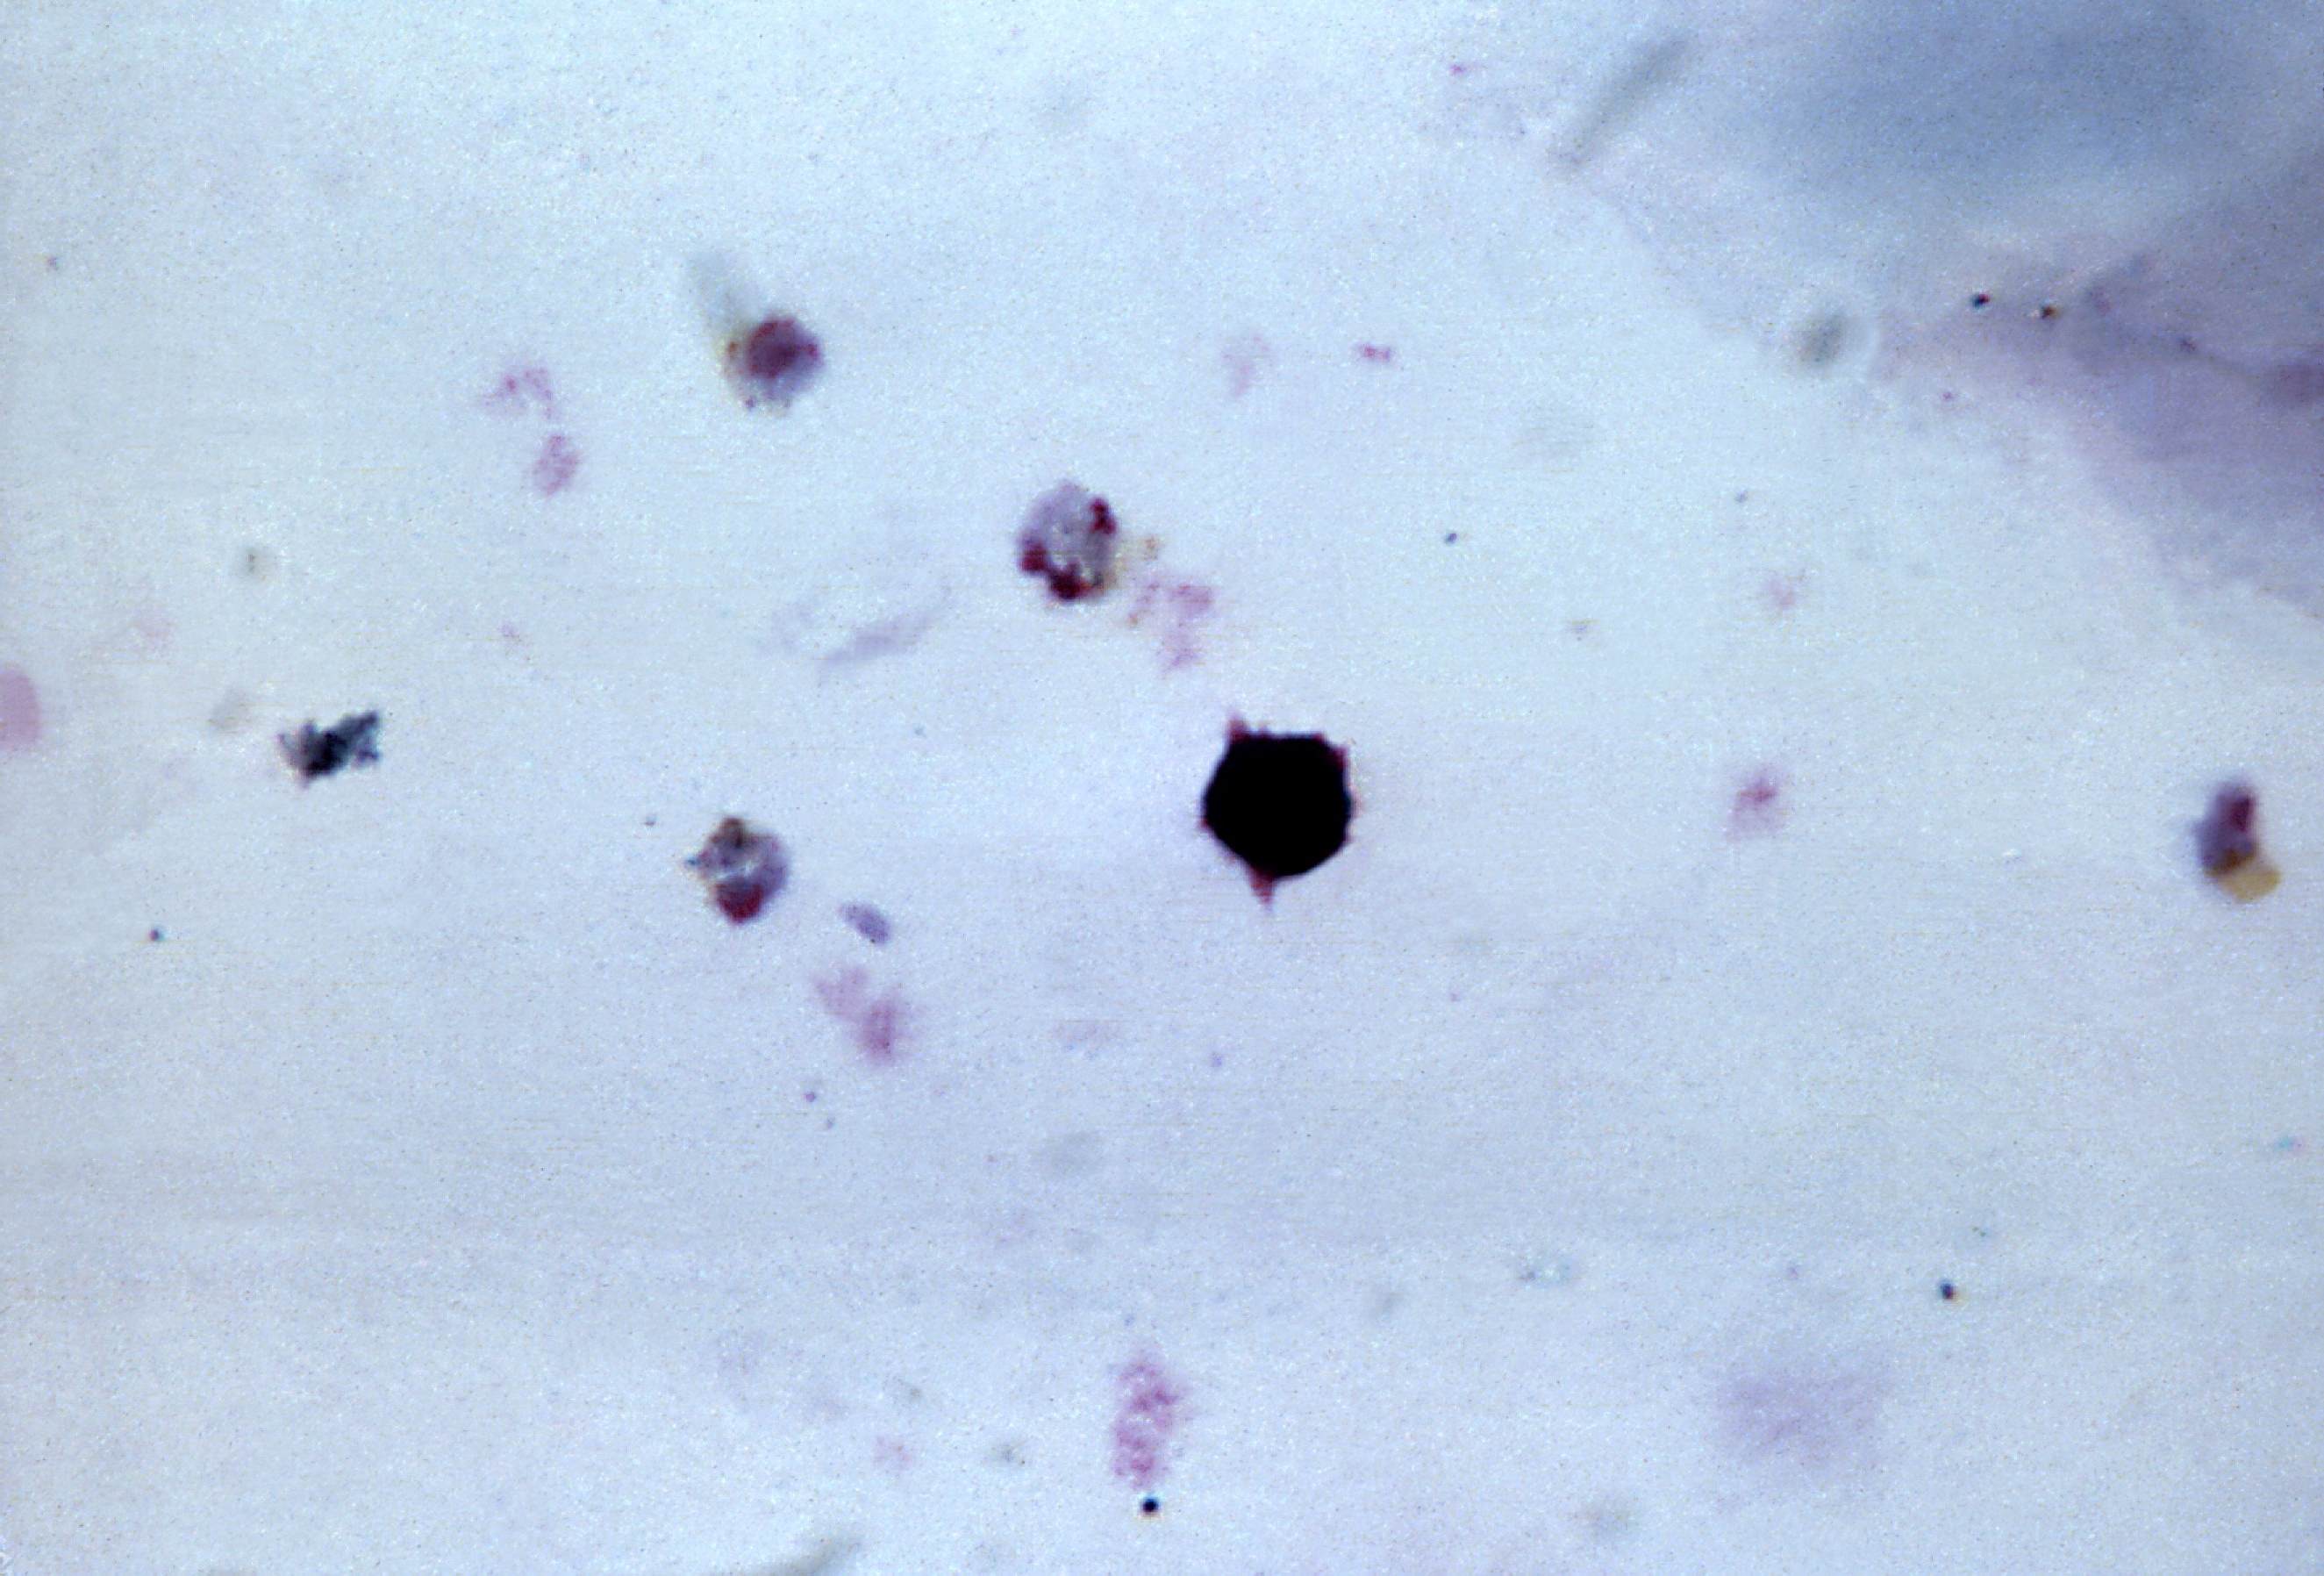 Малярийный плазмодий под микроскопом. Слизевик плазмодий. Многочисленные мелкие тельца